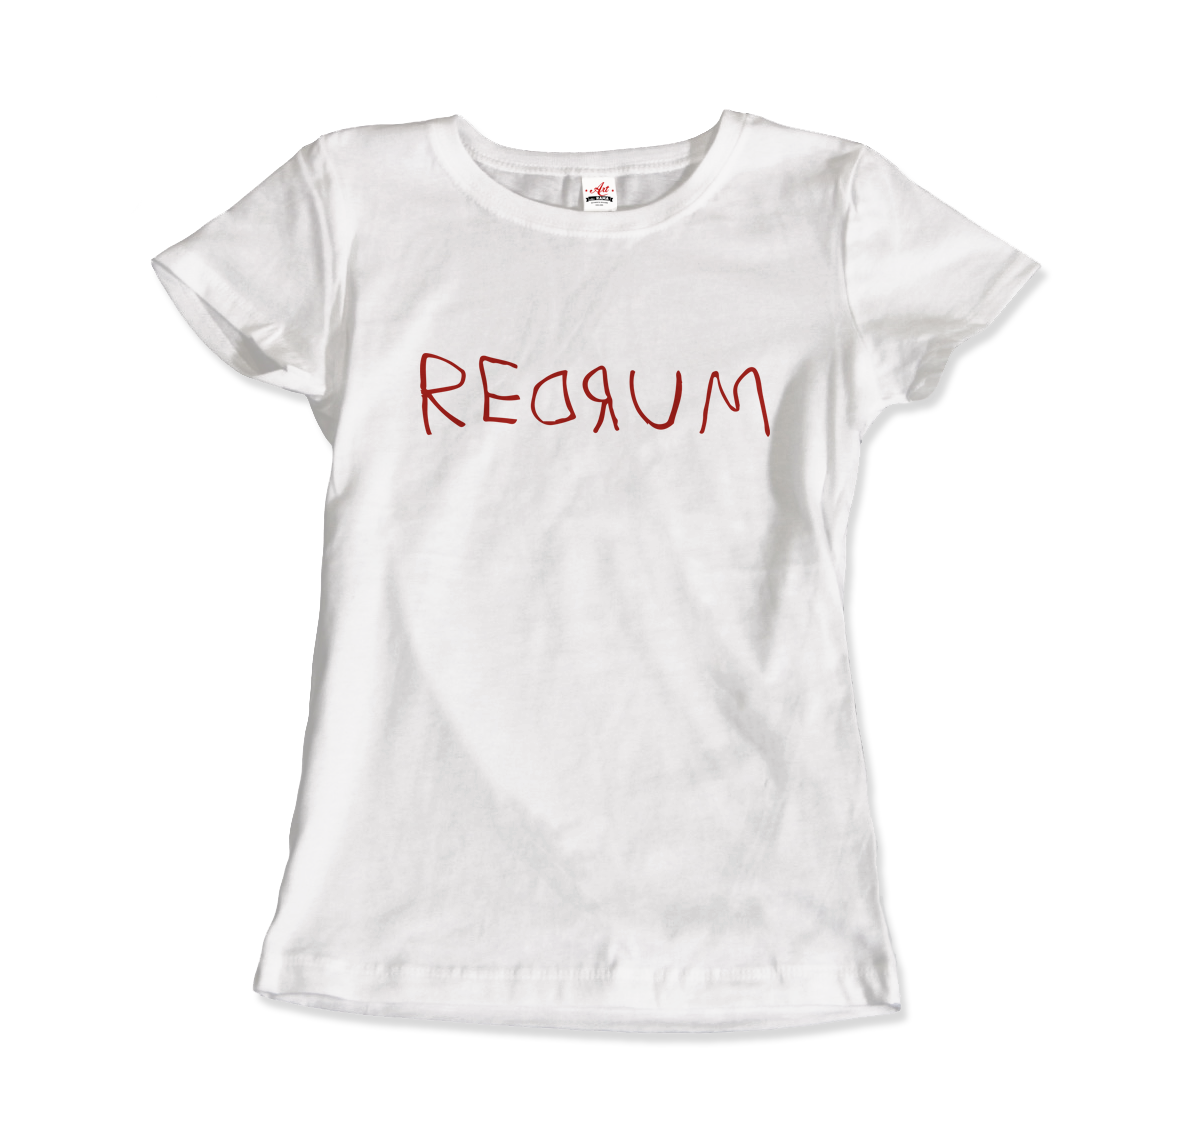 Redrum - The Shining Movie T-Shirt-1